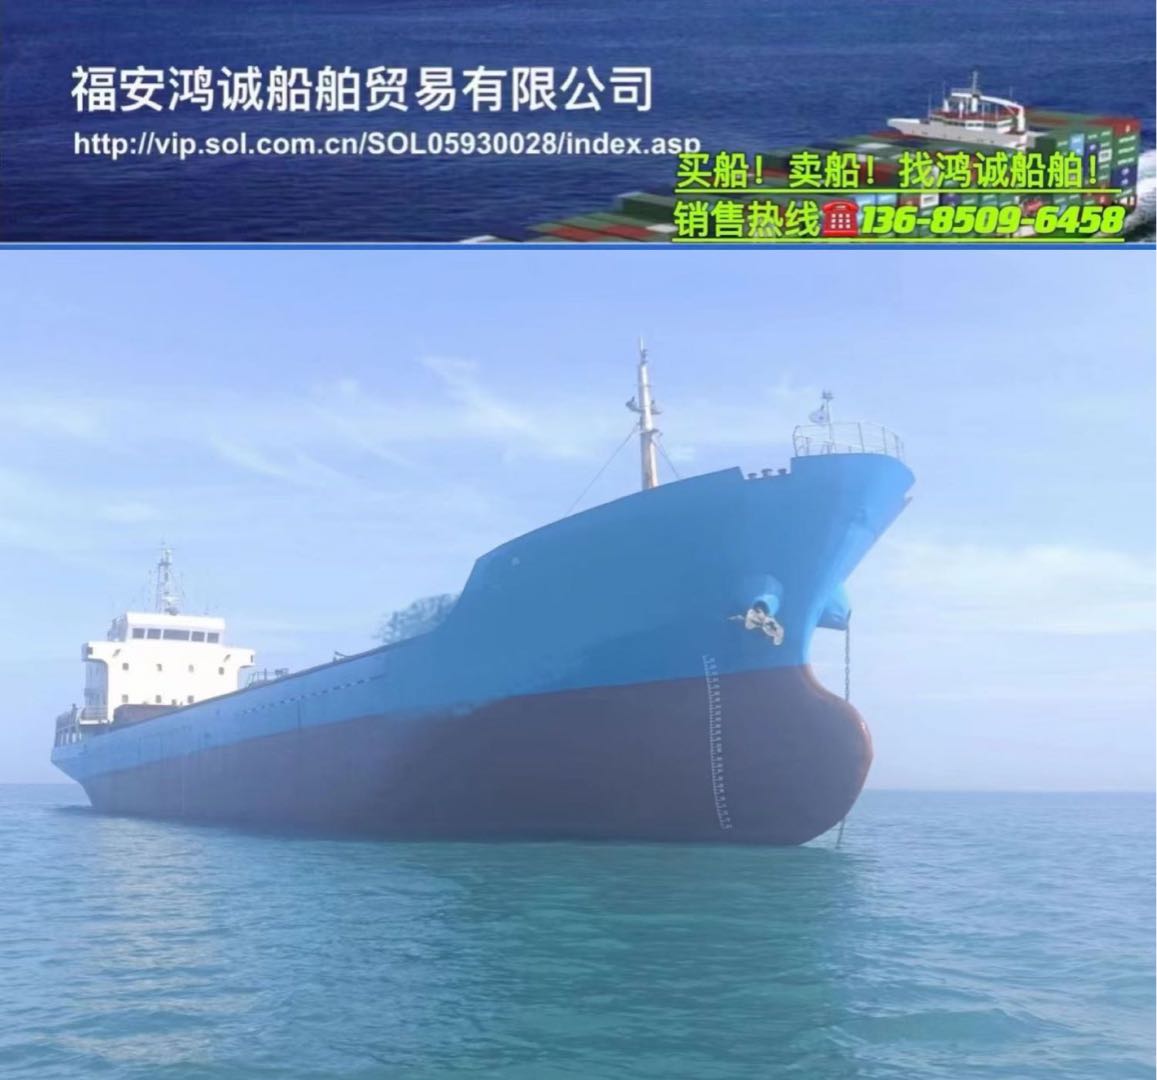 低价出售3315吨在航干散货船